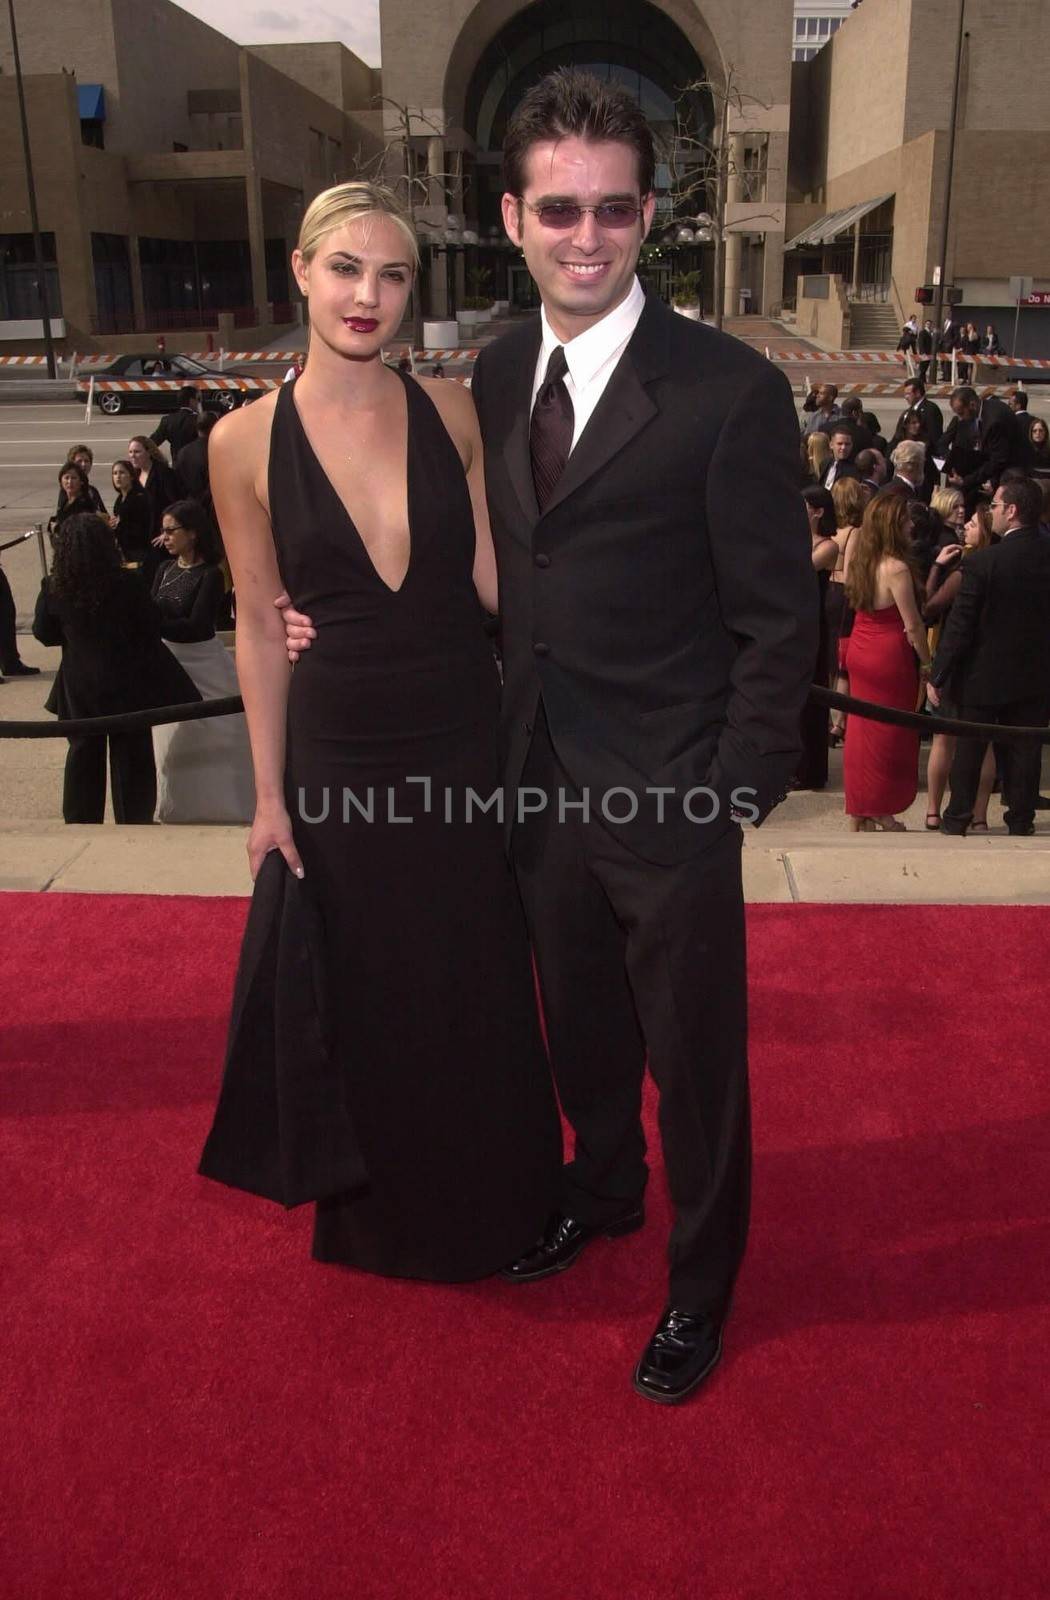 Bruno Campos and wife Carina at the 2000 Alma Awards, in Pasadena, 04-16-00